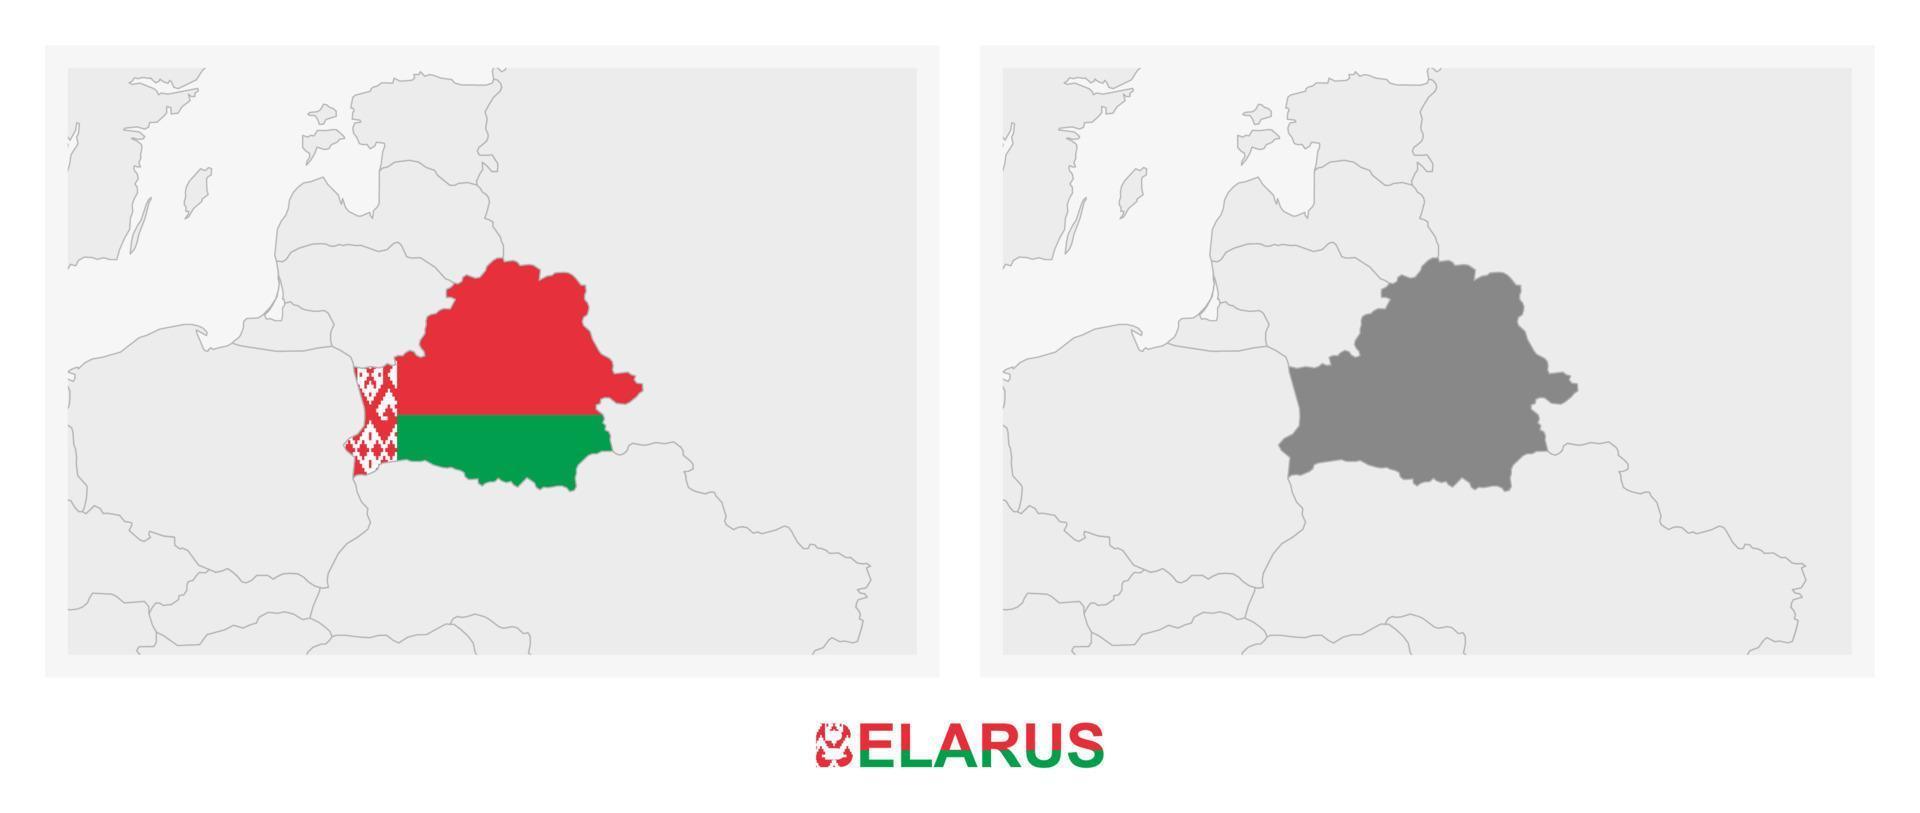 deux versions de la carte de la biélorussie, avec le drapeau de la biélorussie et surlignées en gris foncé. vecteur